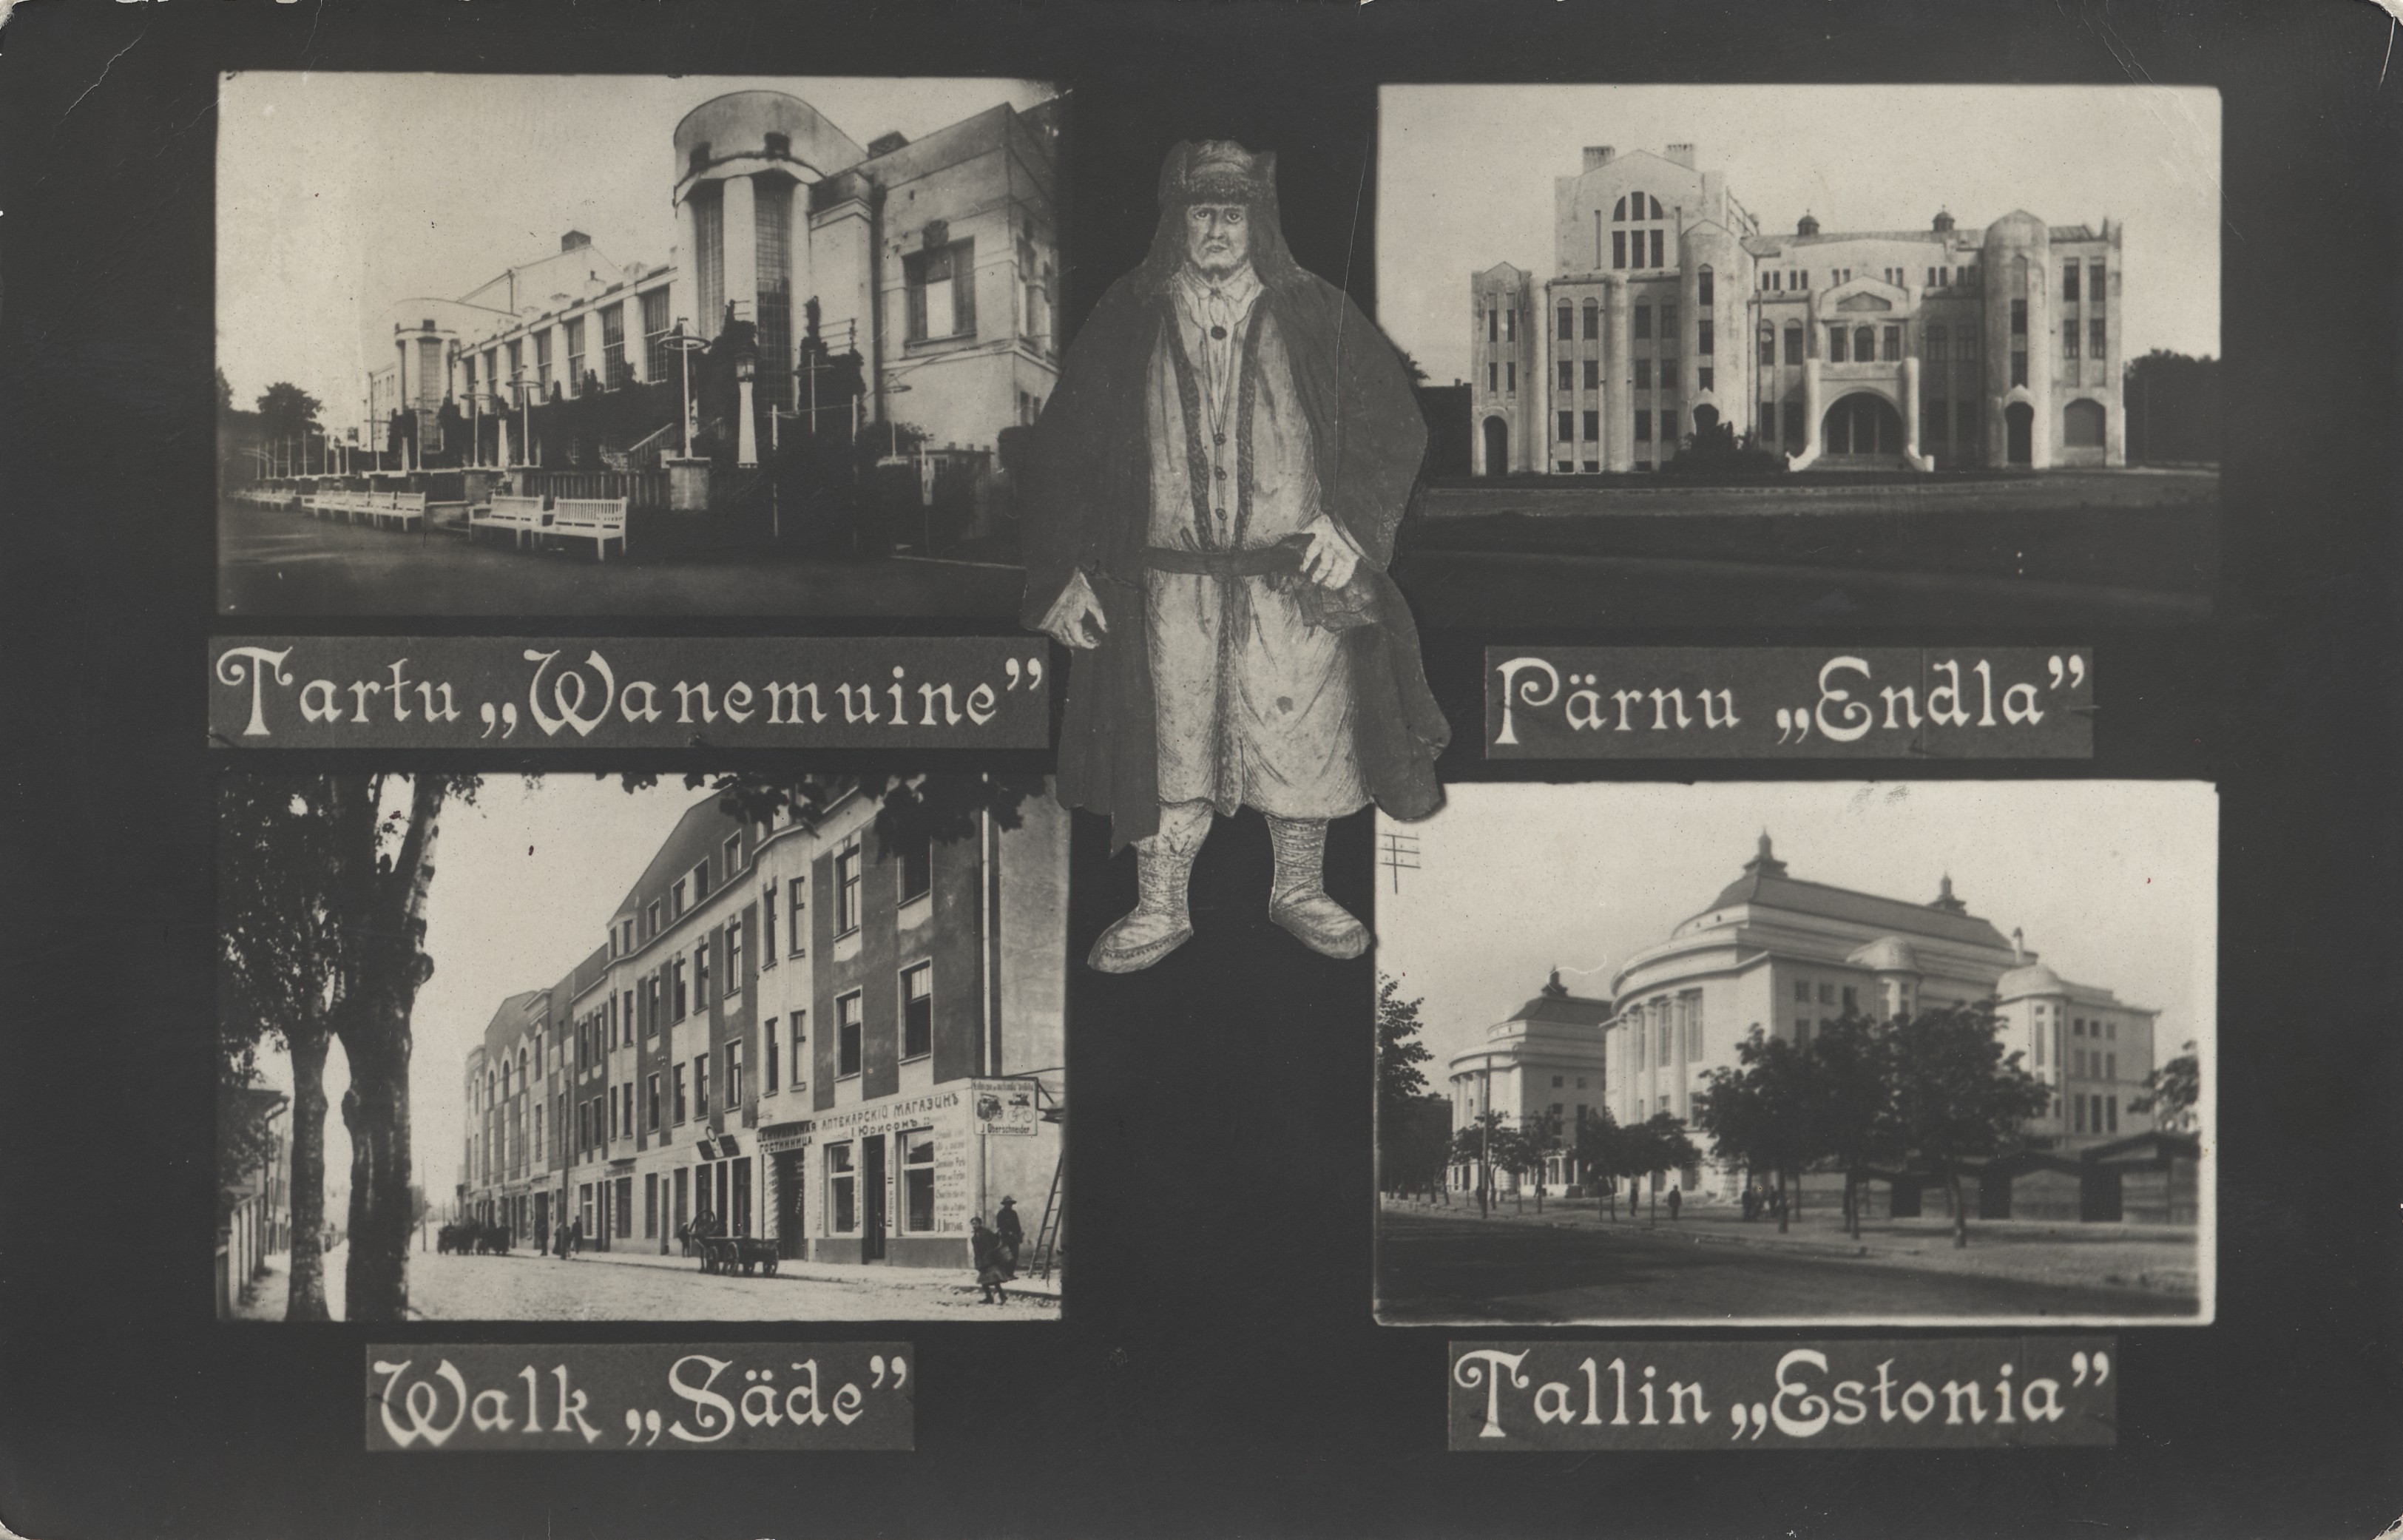 Tartu "Wanemuine" ; Pärnu "Endla" ; Walk "Säde" ; Tallinn "Estonia"